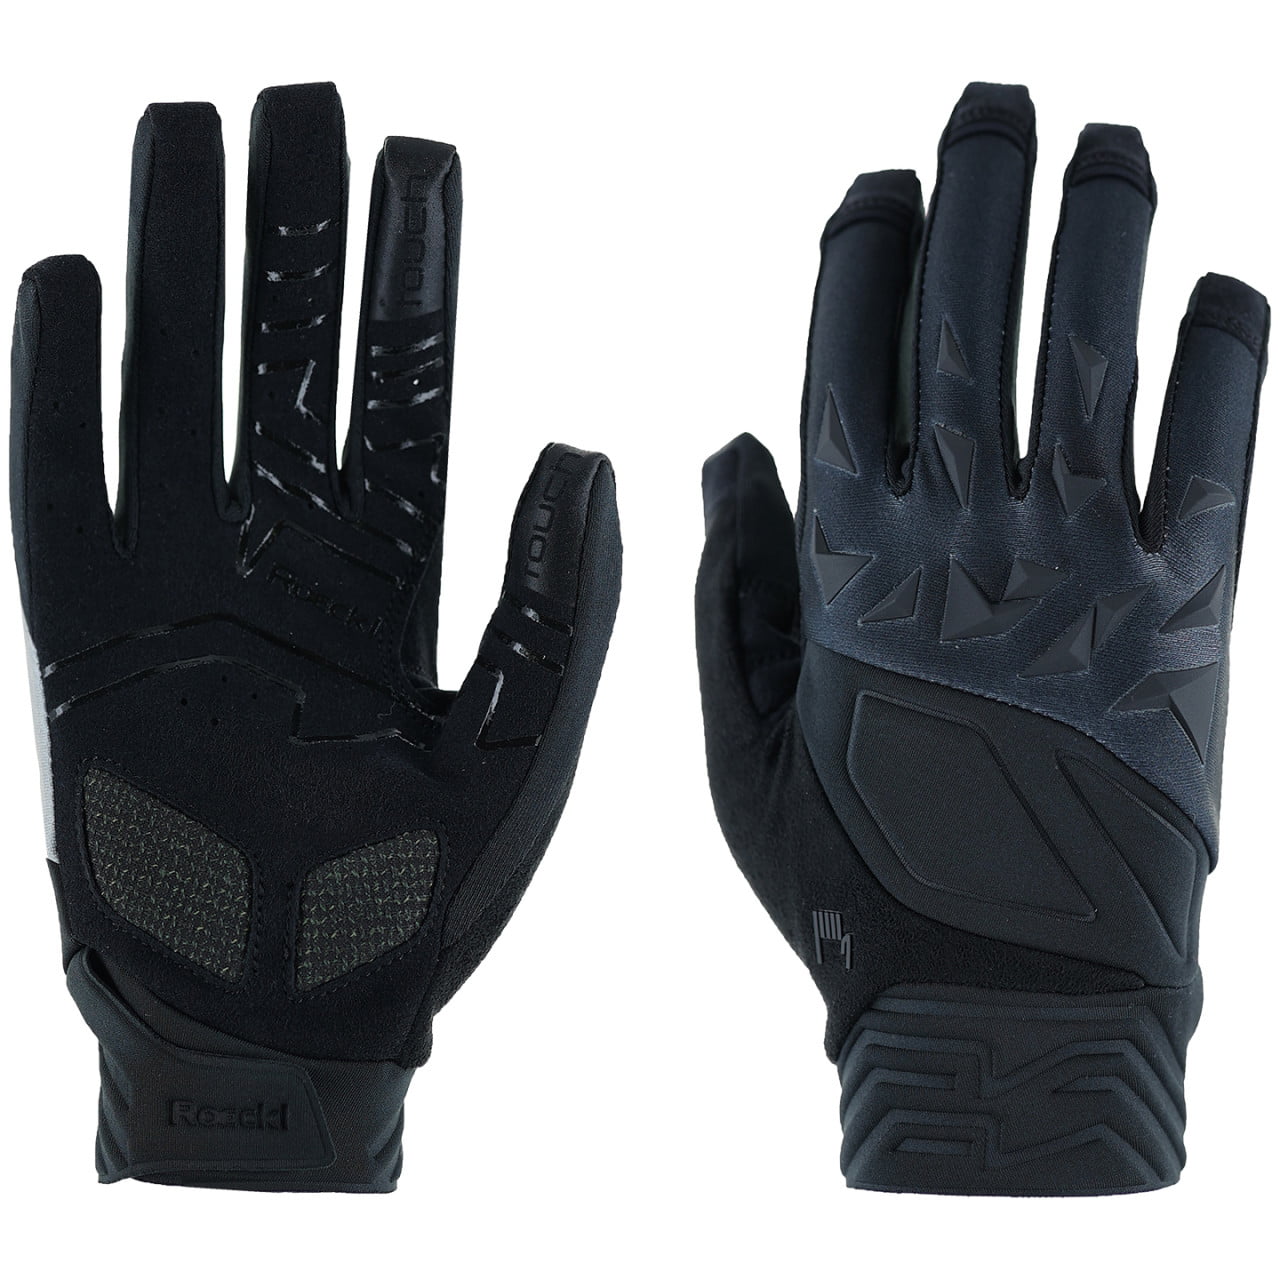 Montalbo Full Finger Gloves